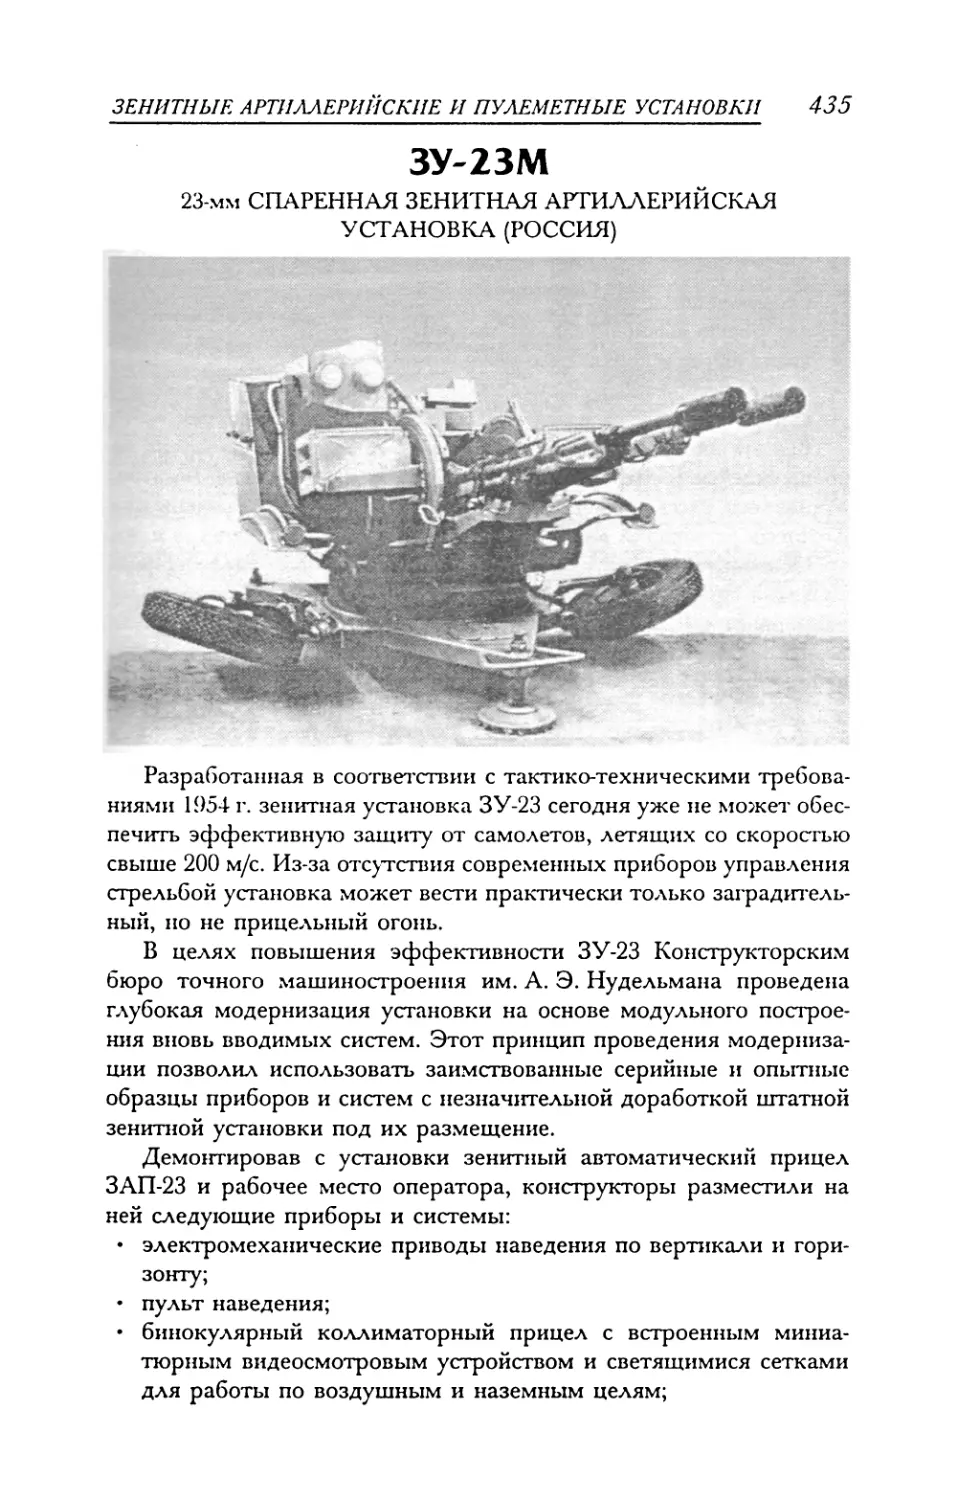 ЗУ-23М